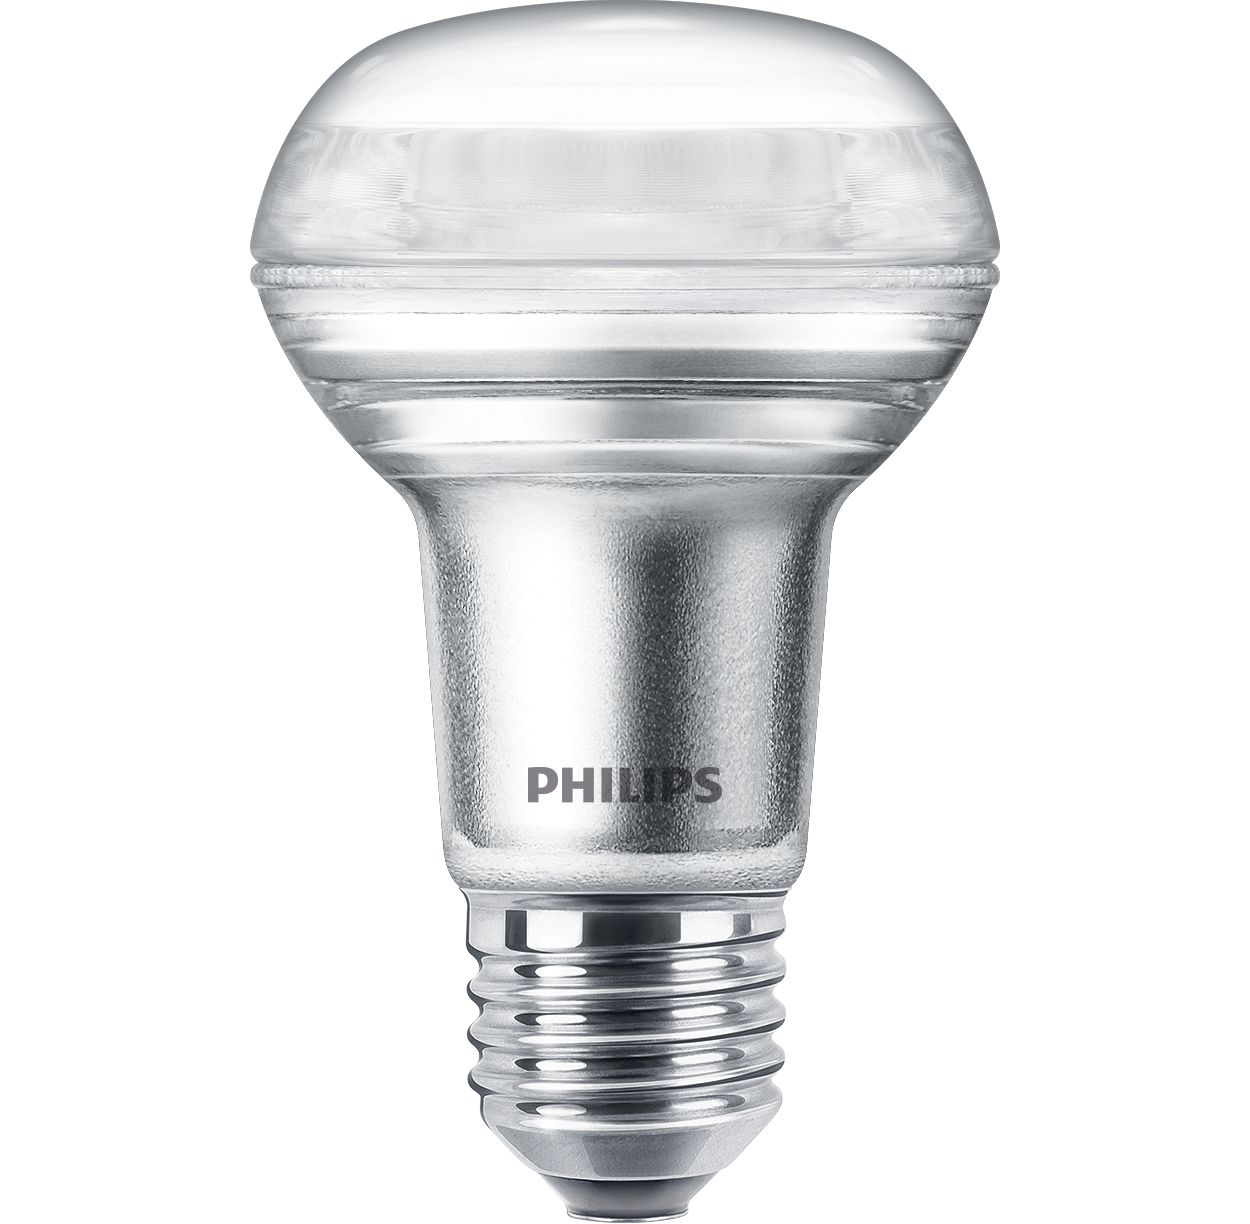 Duurzame LED-lamp met een gerichte, heldere lichtbundel